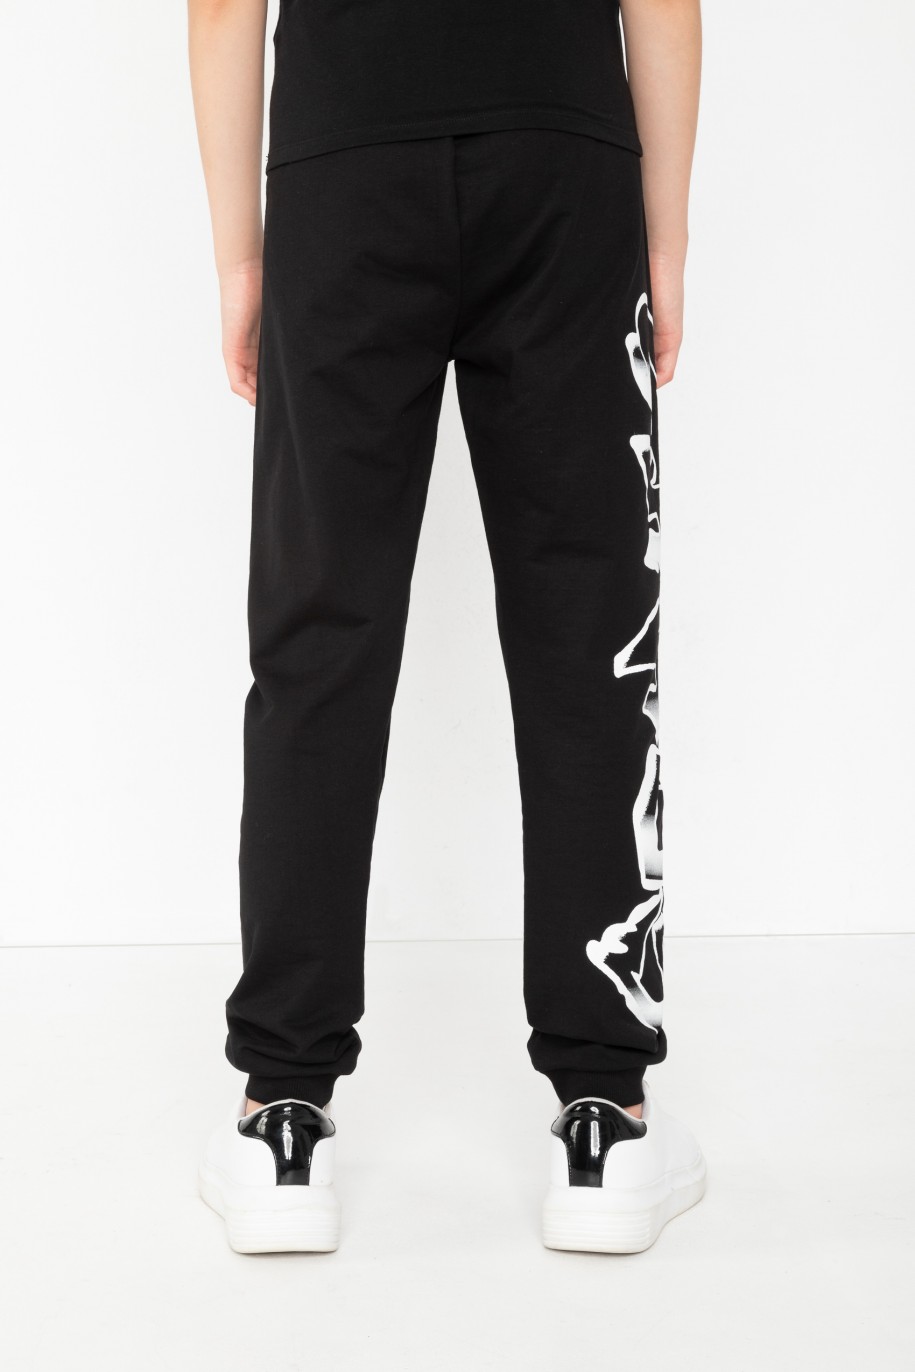 Czarne spodnie dresowe z nadrukiem graffiti - 43743